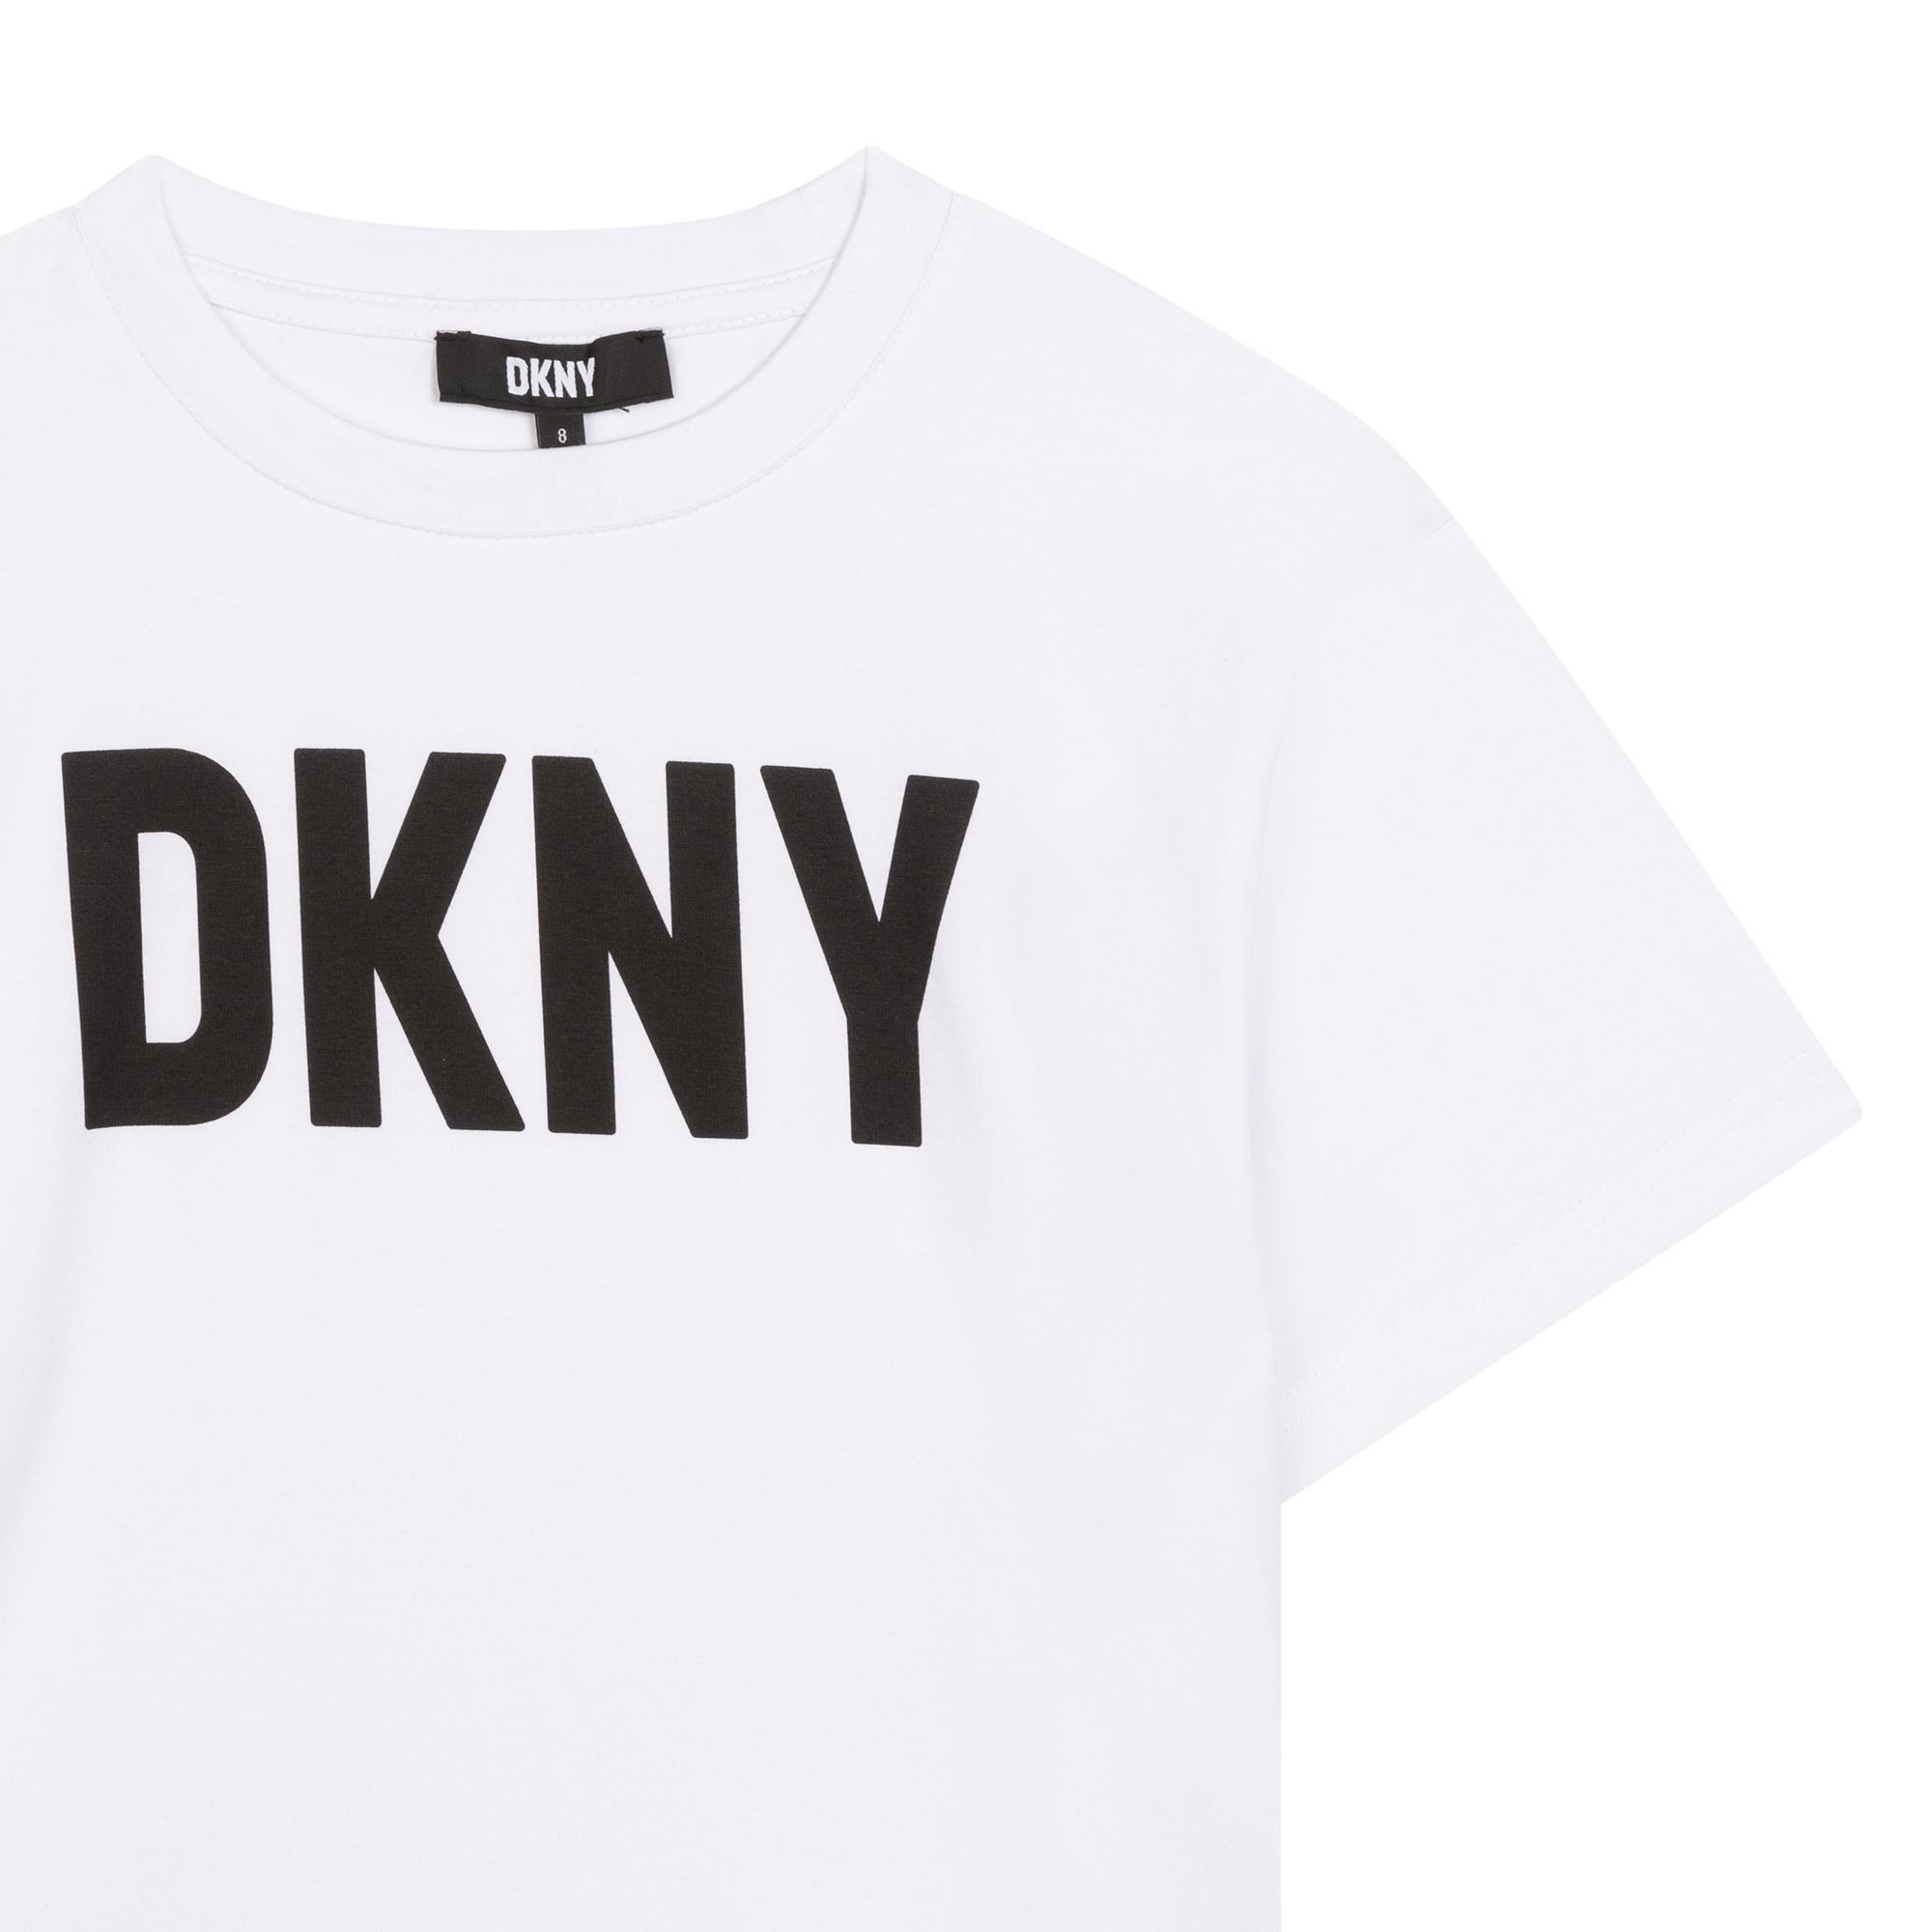 2-in-1 jurk met lovertjes DKNY Voor